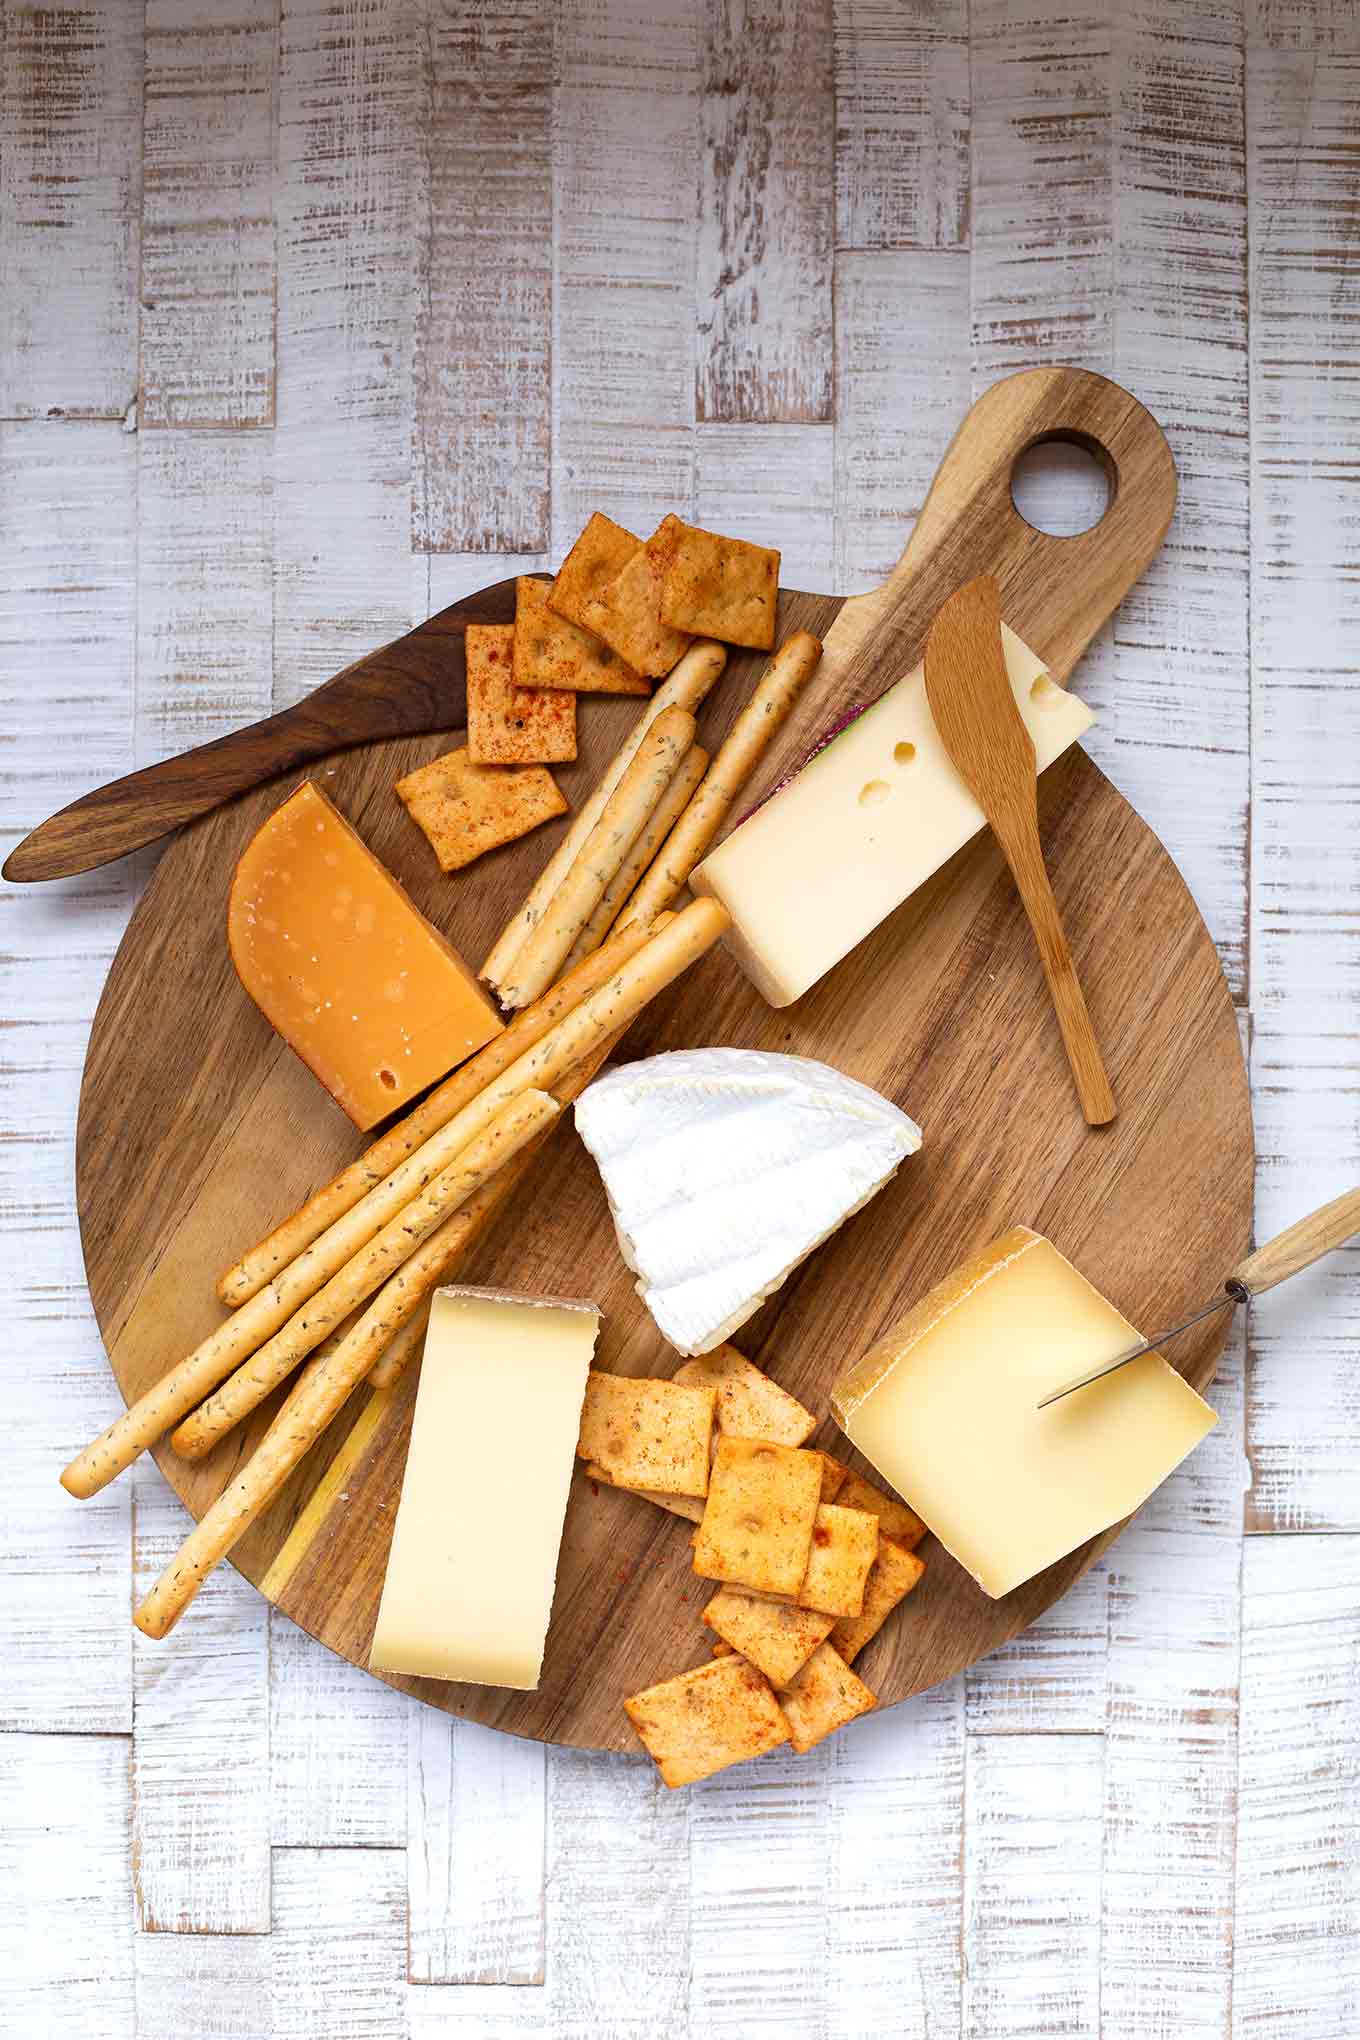 So geht's: Käseplatte selber machen. Mit dieser einfachen Schritt für Schritt-Anleitung wird die perfekte Käseplatte zum Kinderspiel! - Kochkarussell.com #käseplatte #selbermachen #rezept #kochkarussell